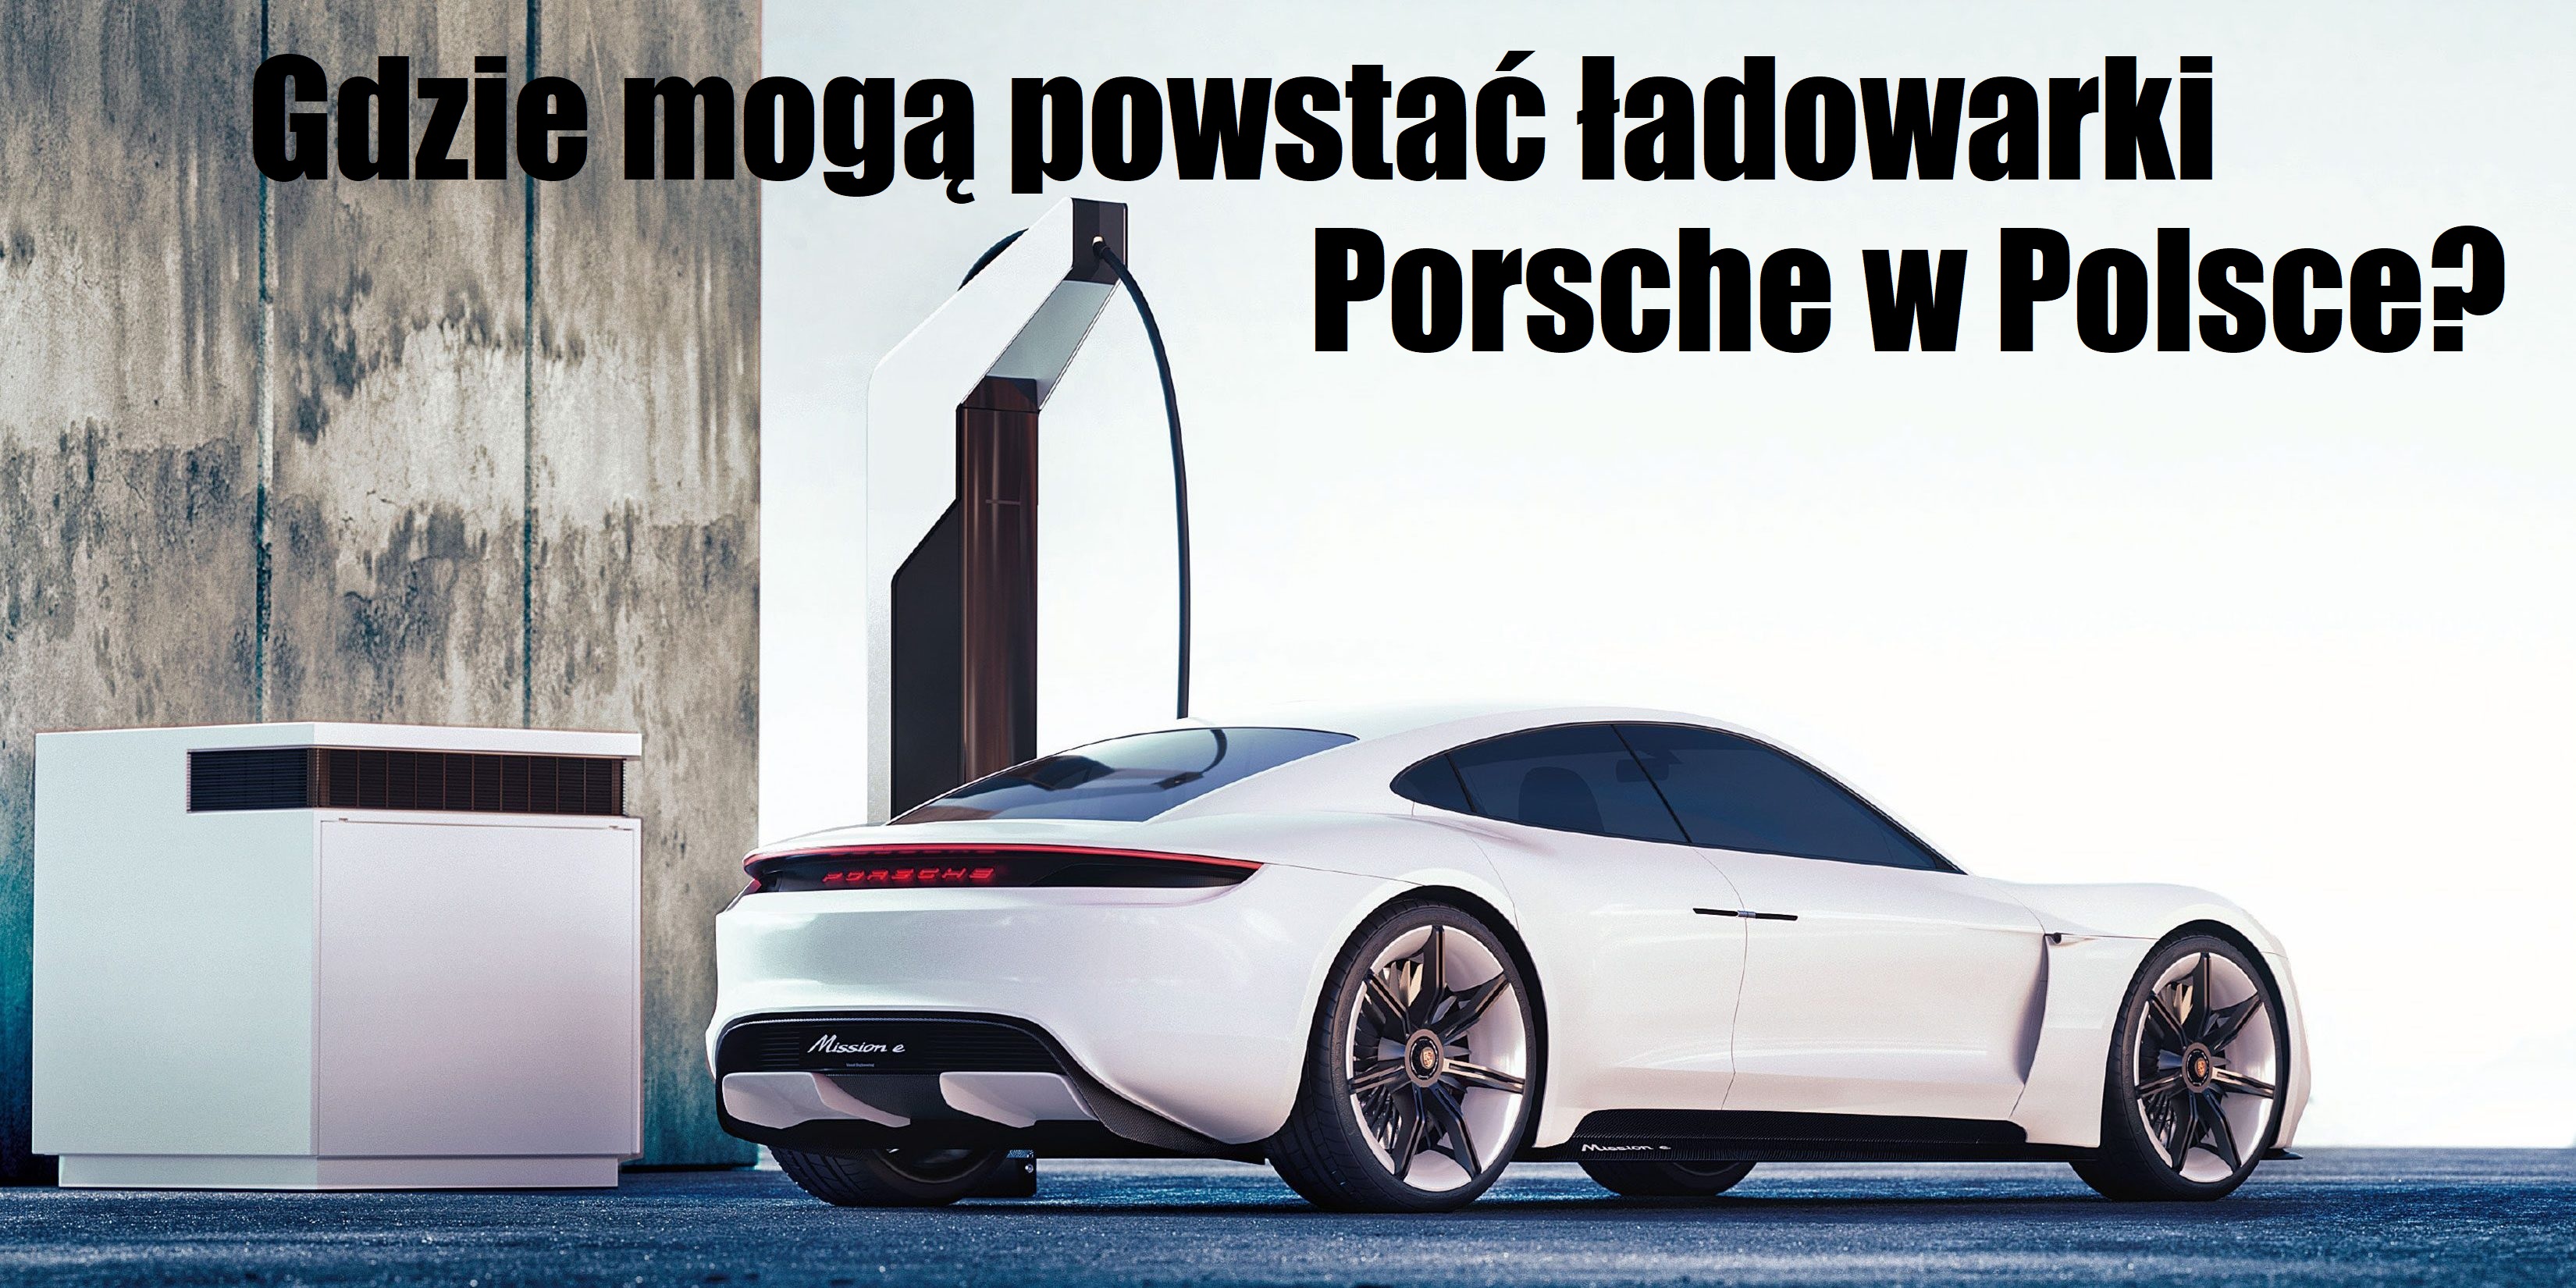 Gdzie mogą powstać ładowarki Porsche w Polsce? NaPrąd